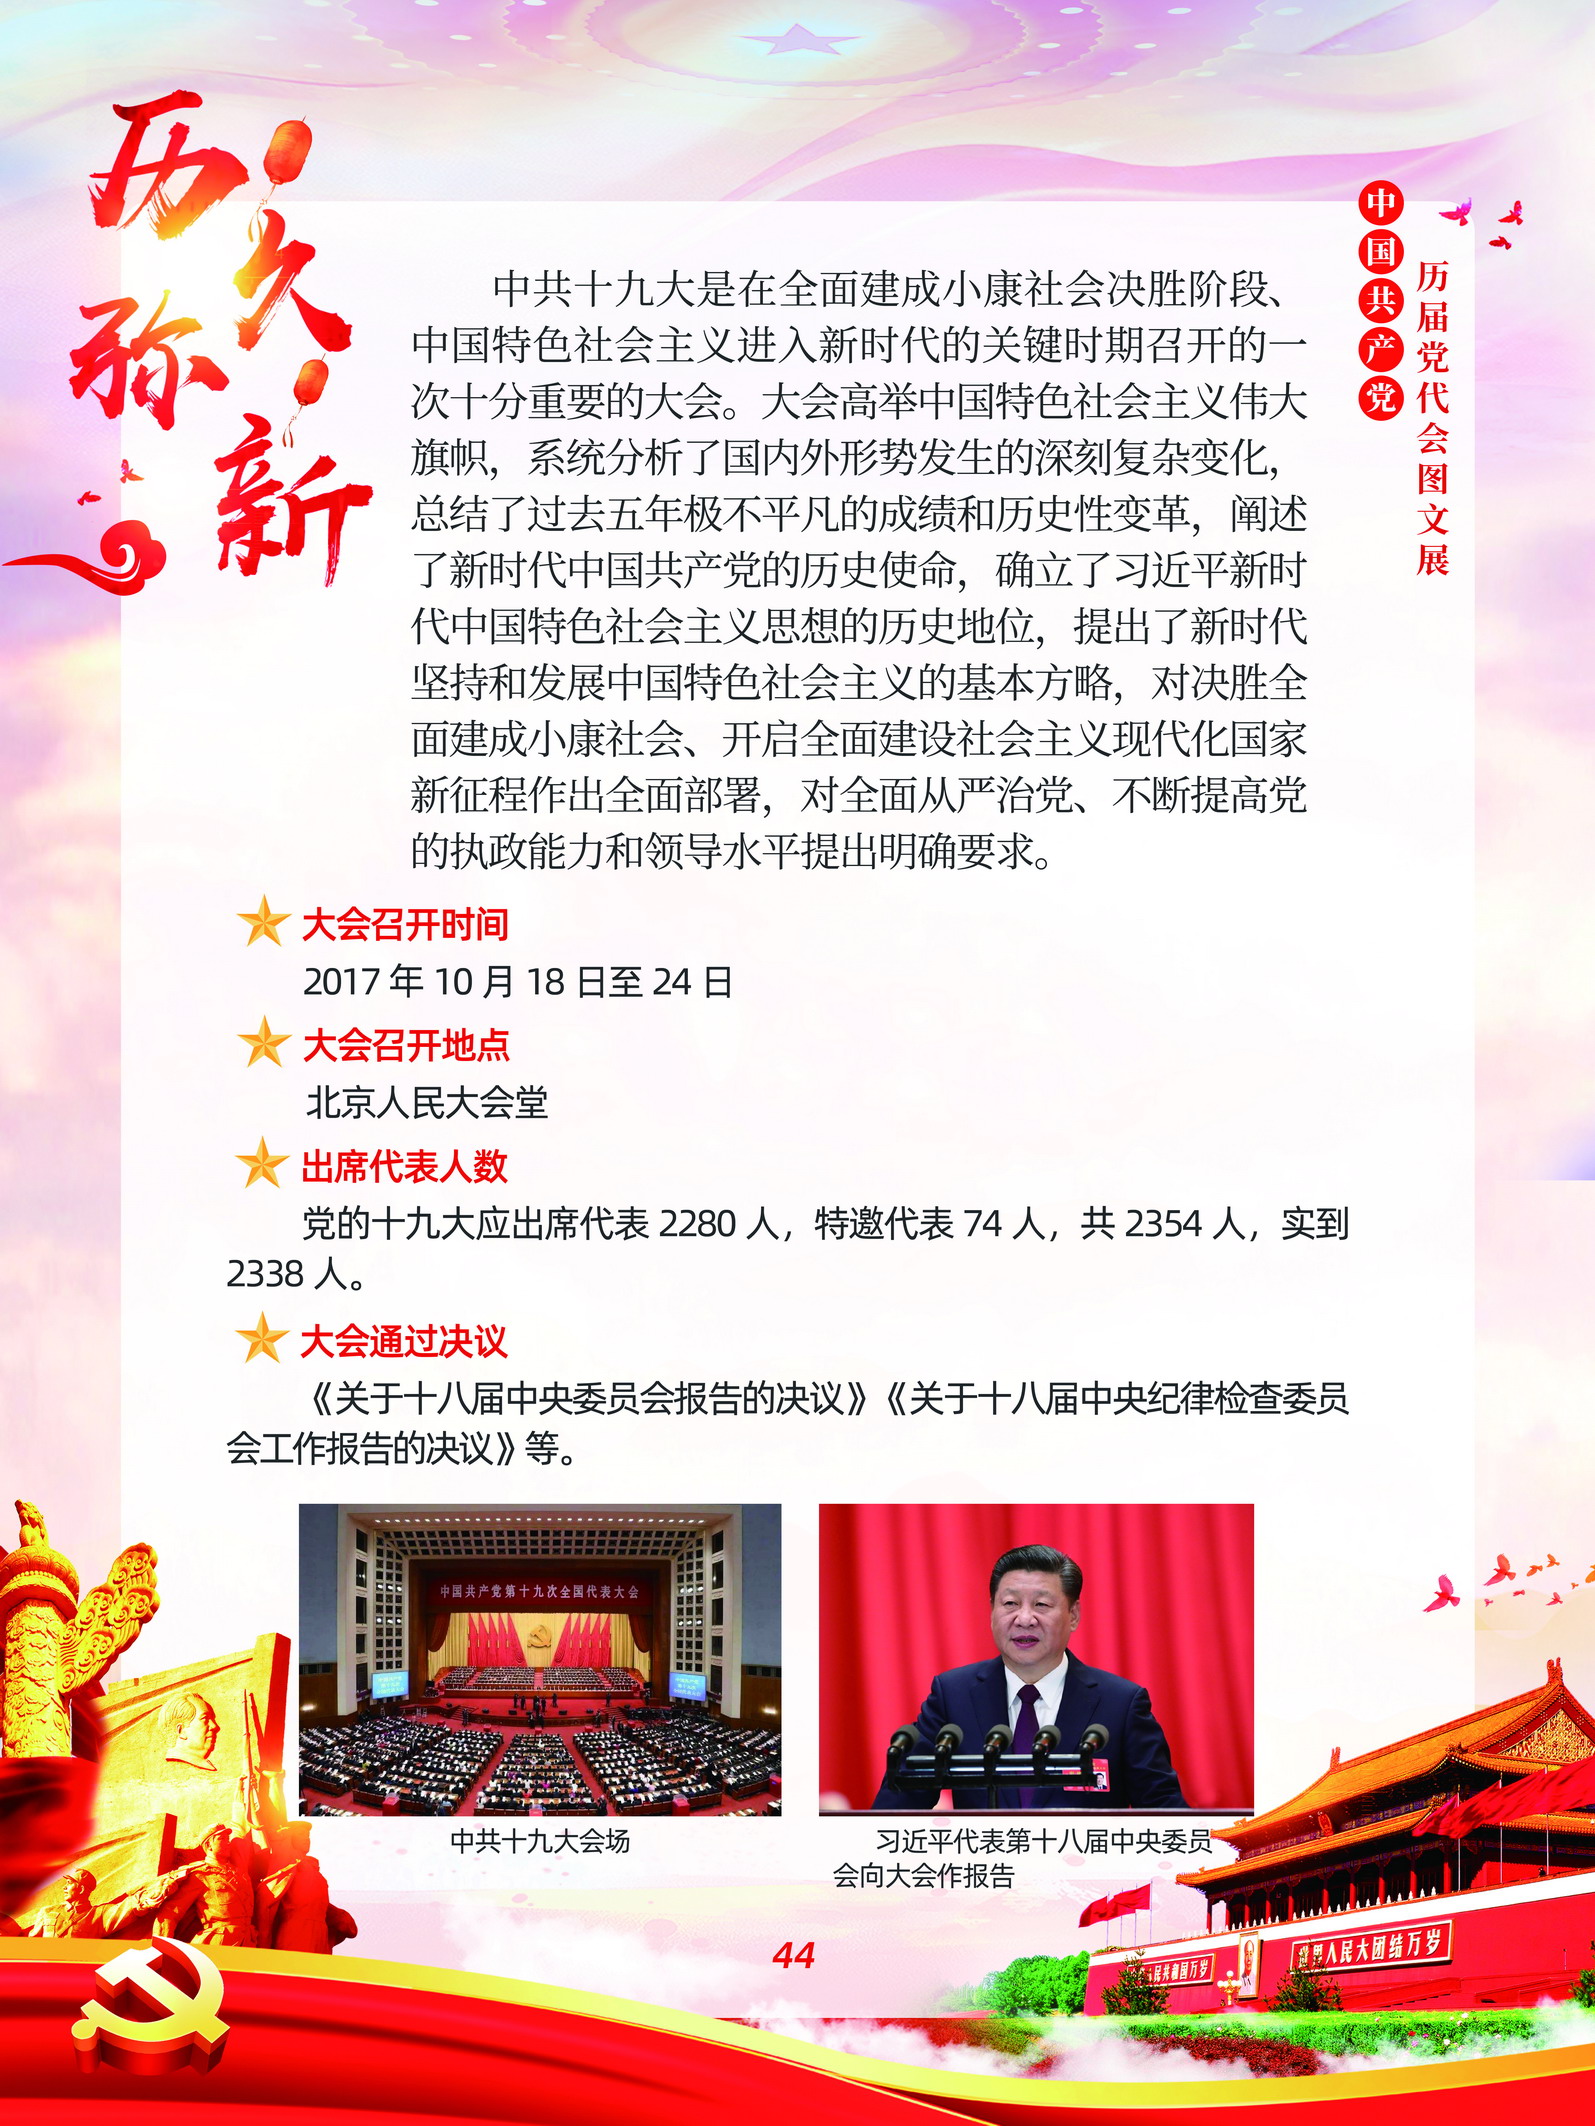 中国共产党历届党代会图文展_图43